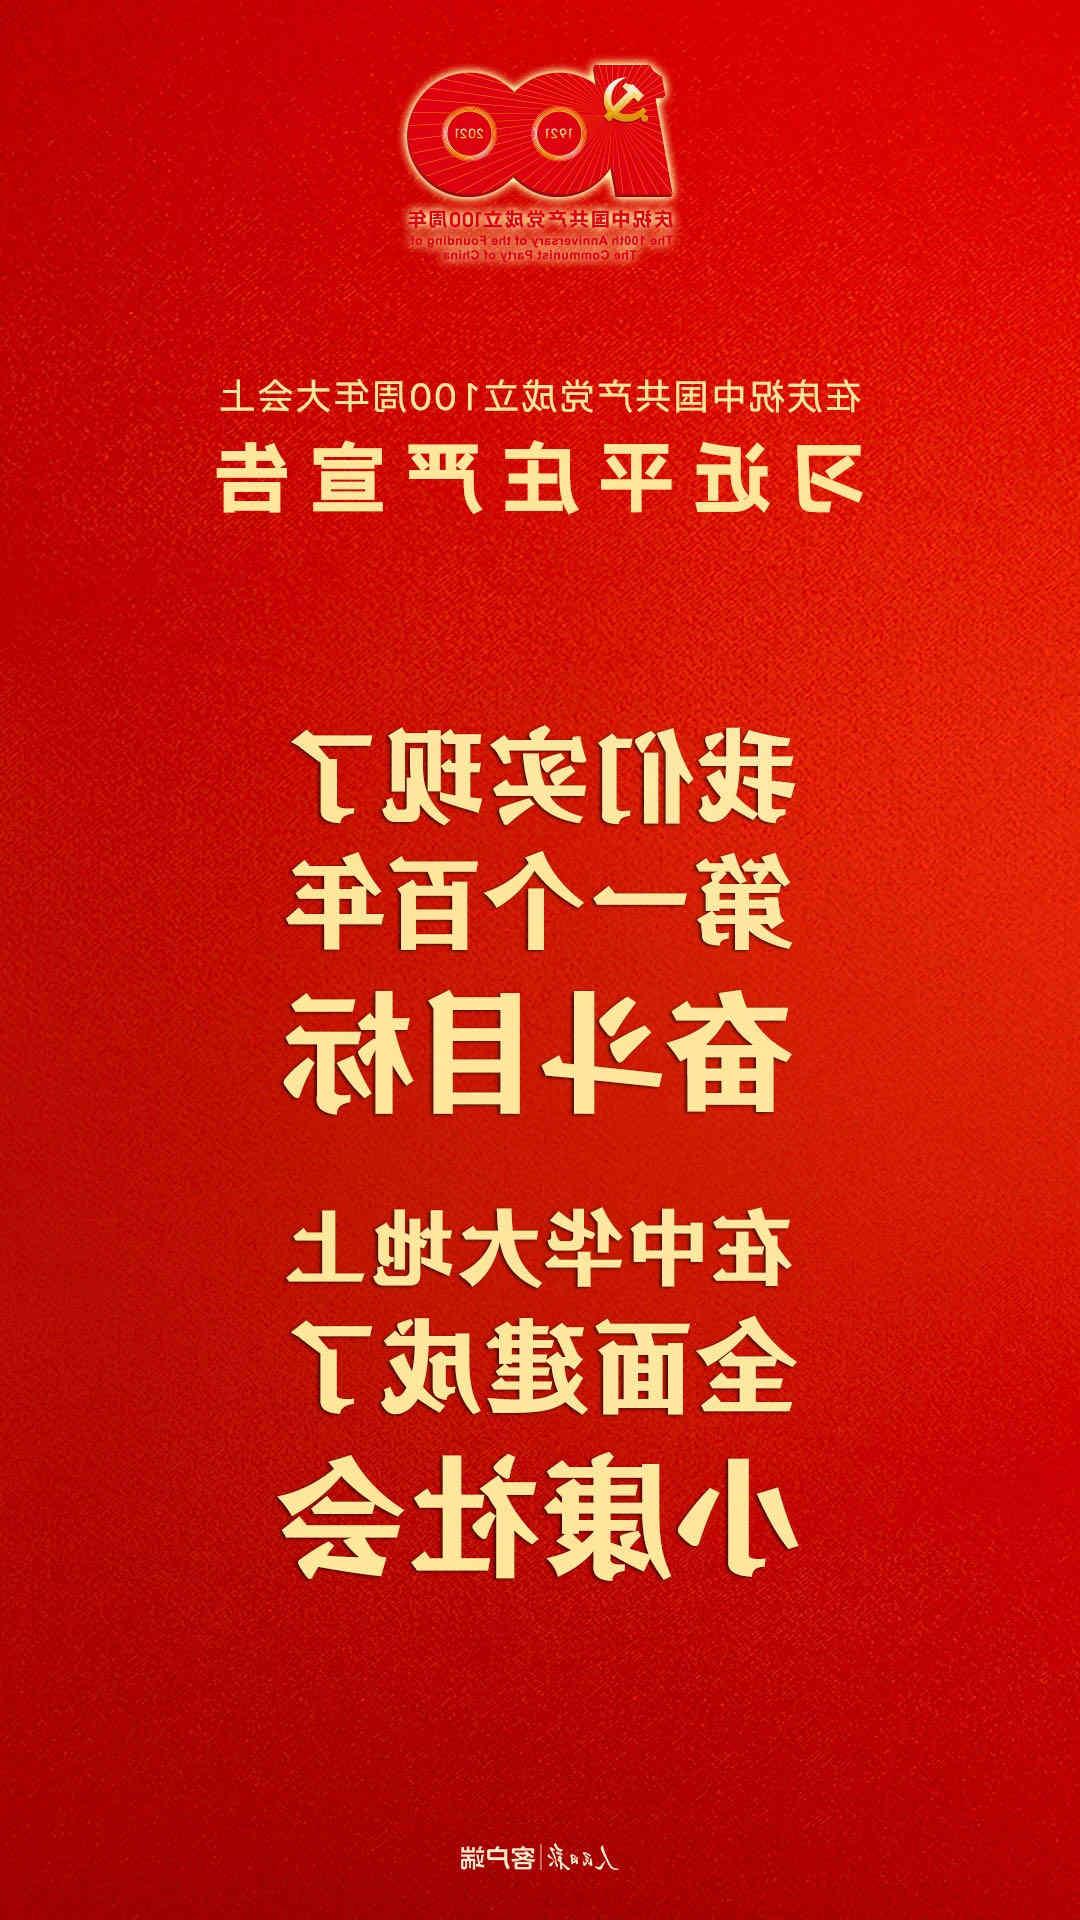 欢迎访问十大电子网址庆祝中国共产党成立100周年